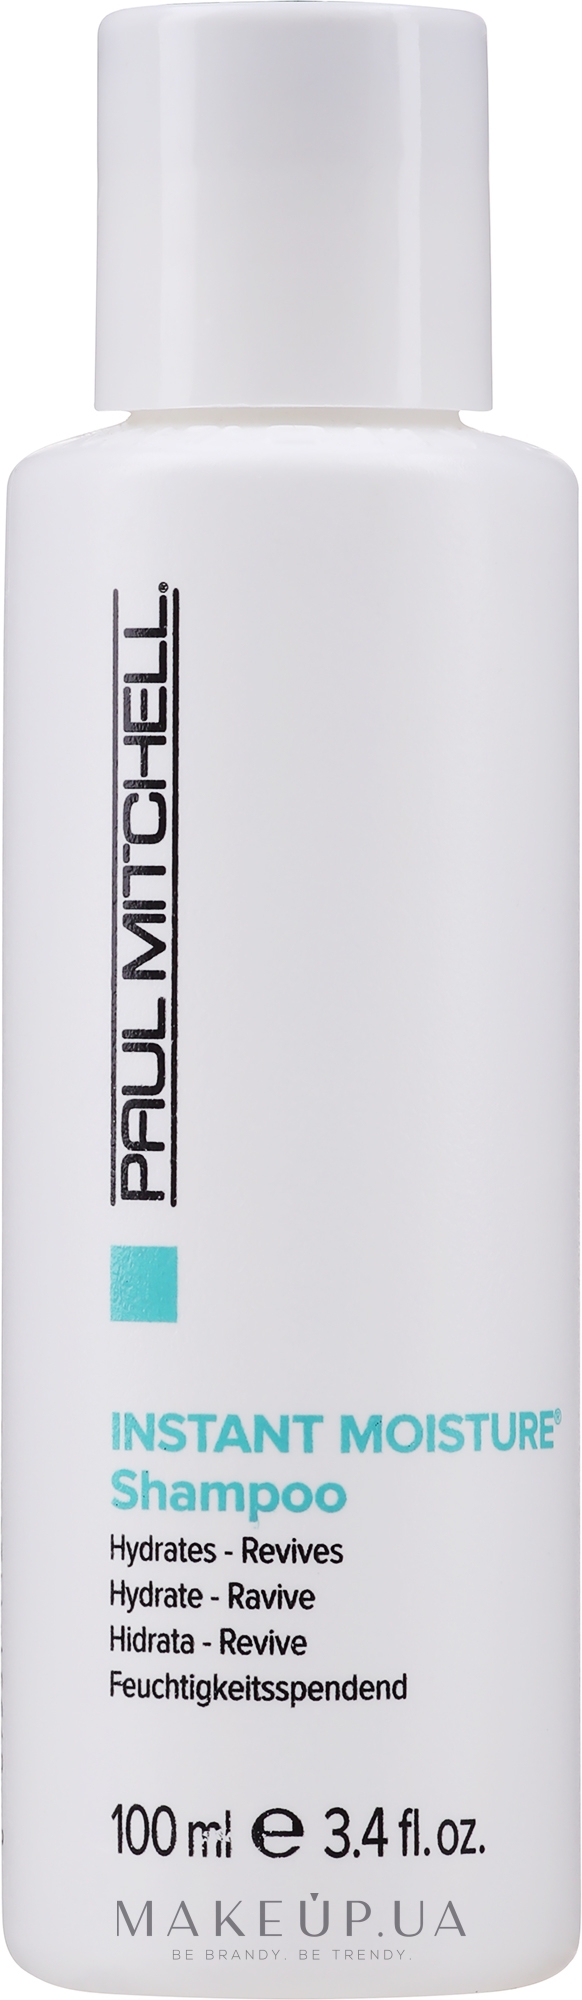 Мгновенно увлажняющий шампунь для ежедневного использования - Paul Mitchell Moisture Instant Moisture Daily Shampoo — фото 100ml